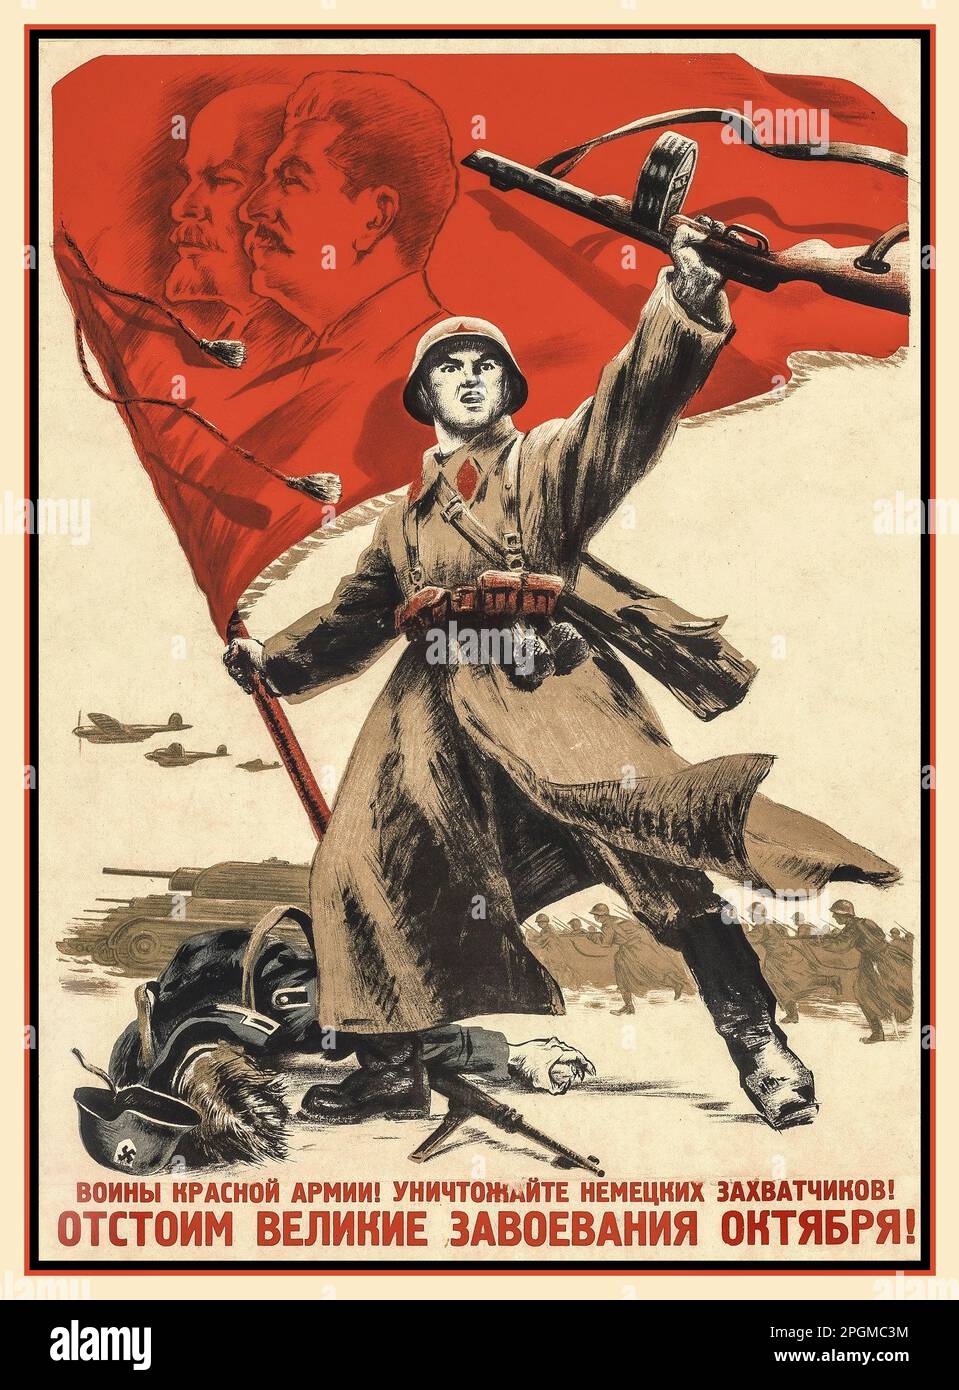 1942 OPÉRATION BARBAROSSA URSS soviétique propagande russe Poster 'les guerriers de l'Armée rouge détruisent les envahisseurs allemands, nous défendrons les grandes conquêtes d'octobre ' Illustration du soldat de l'Armée rouge tenant le drapeau rouge avec les dirigeants soviétiques Staline et Lénine en profil, se tenant au-dessus d'un soldat nazi Wehrmacht mort alors que les forces russes avancent. Banque D'Images